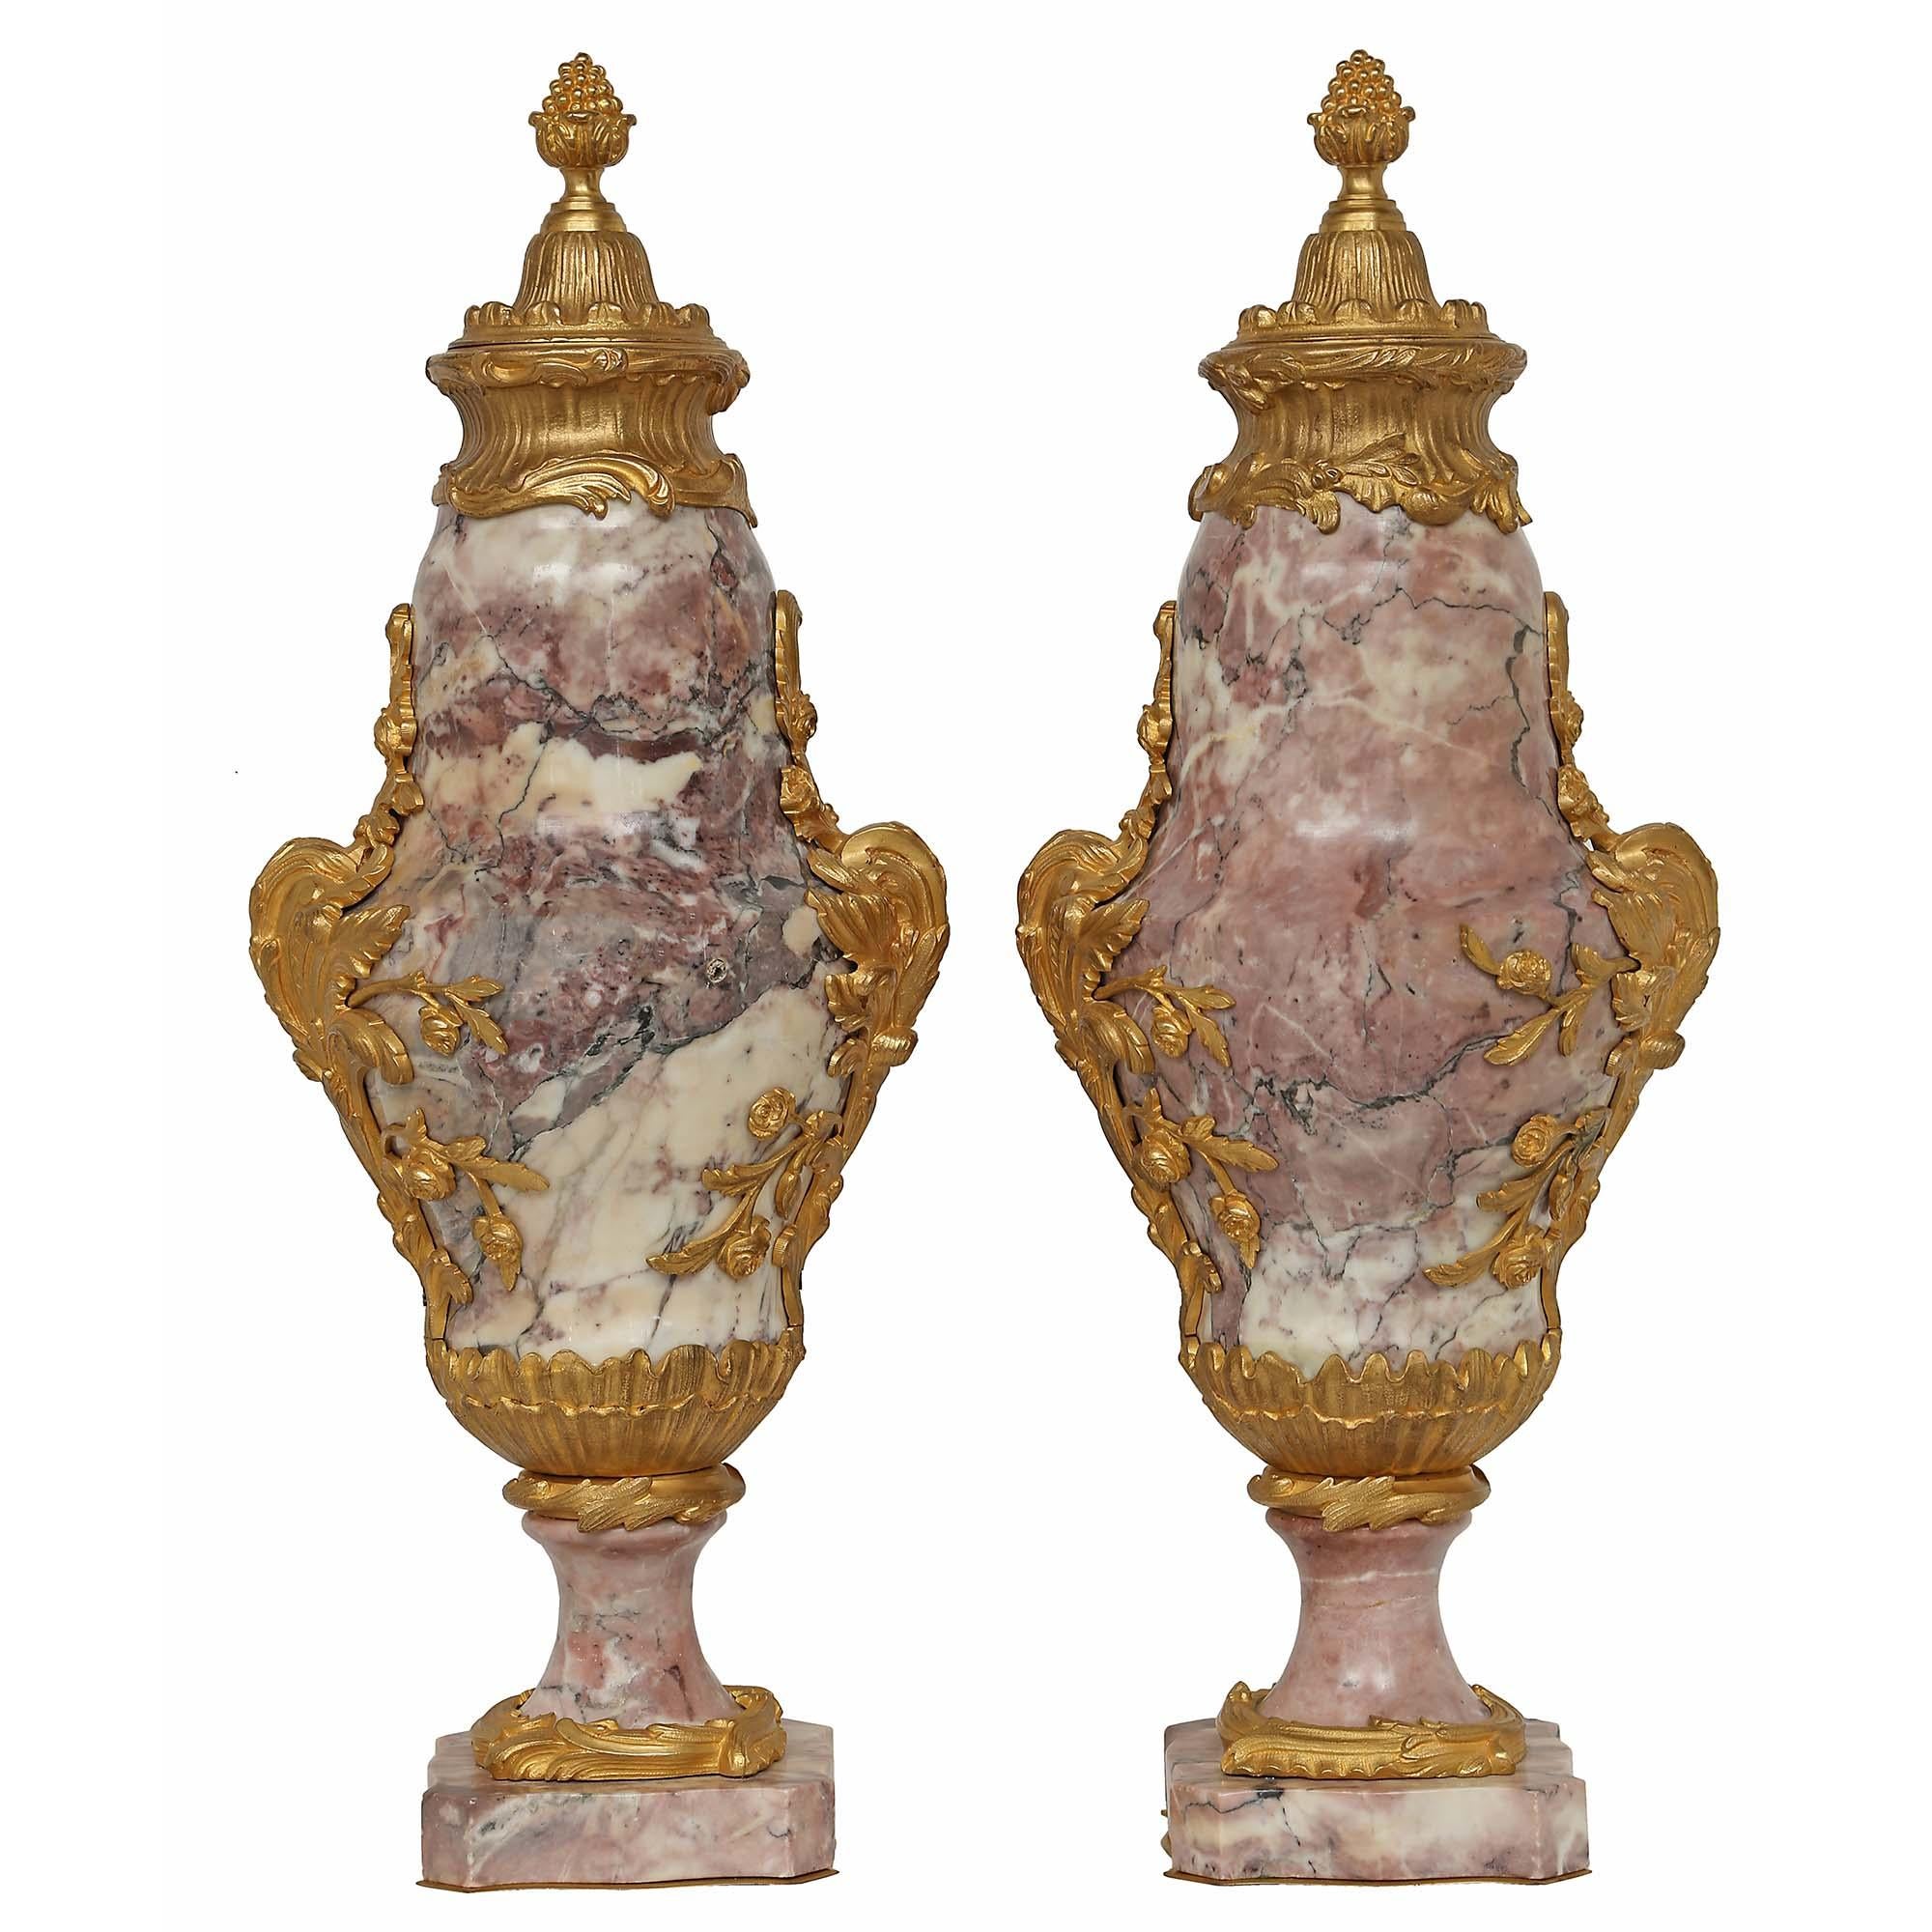 Une paire d'impressionnantes cassolettes françaises du milieu du 19ème siècle en st. Louis XV, bronze doré et marbre Bréche de Violette. Chacun d'entre eux repose sur une base carrée en marbre Bréche Violette, avec des coins concaves et des